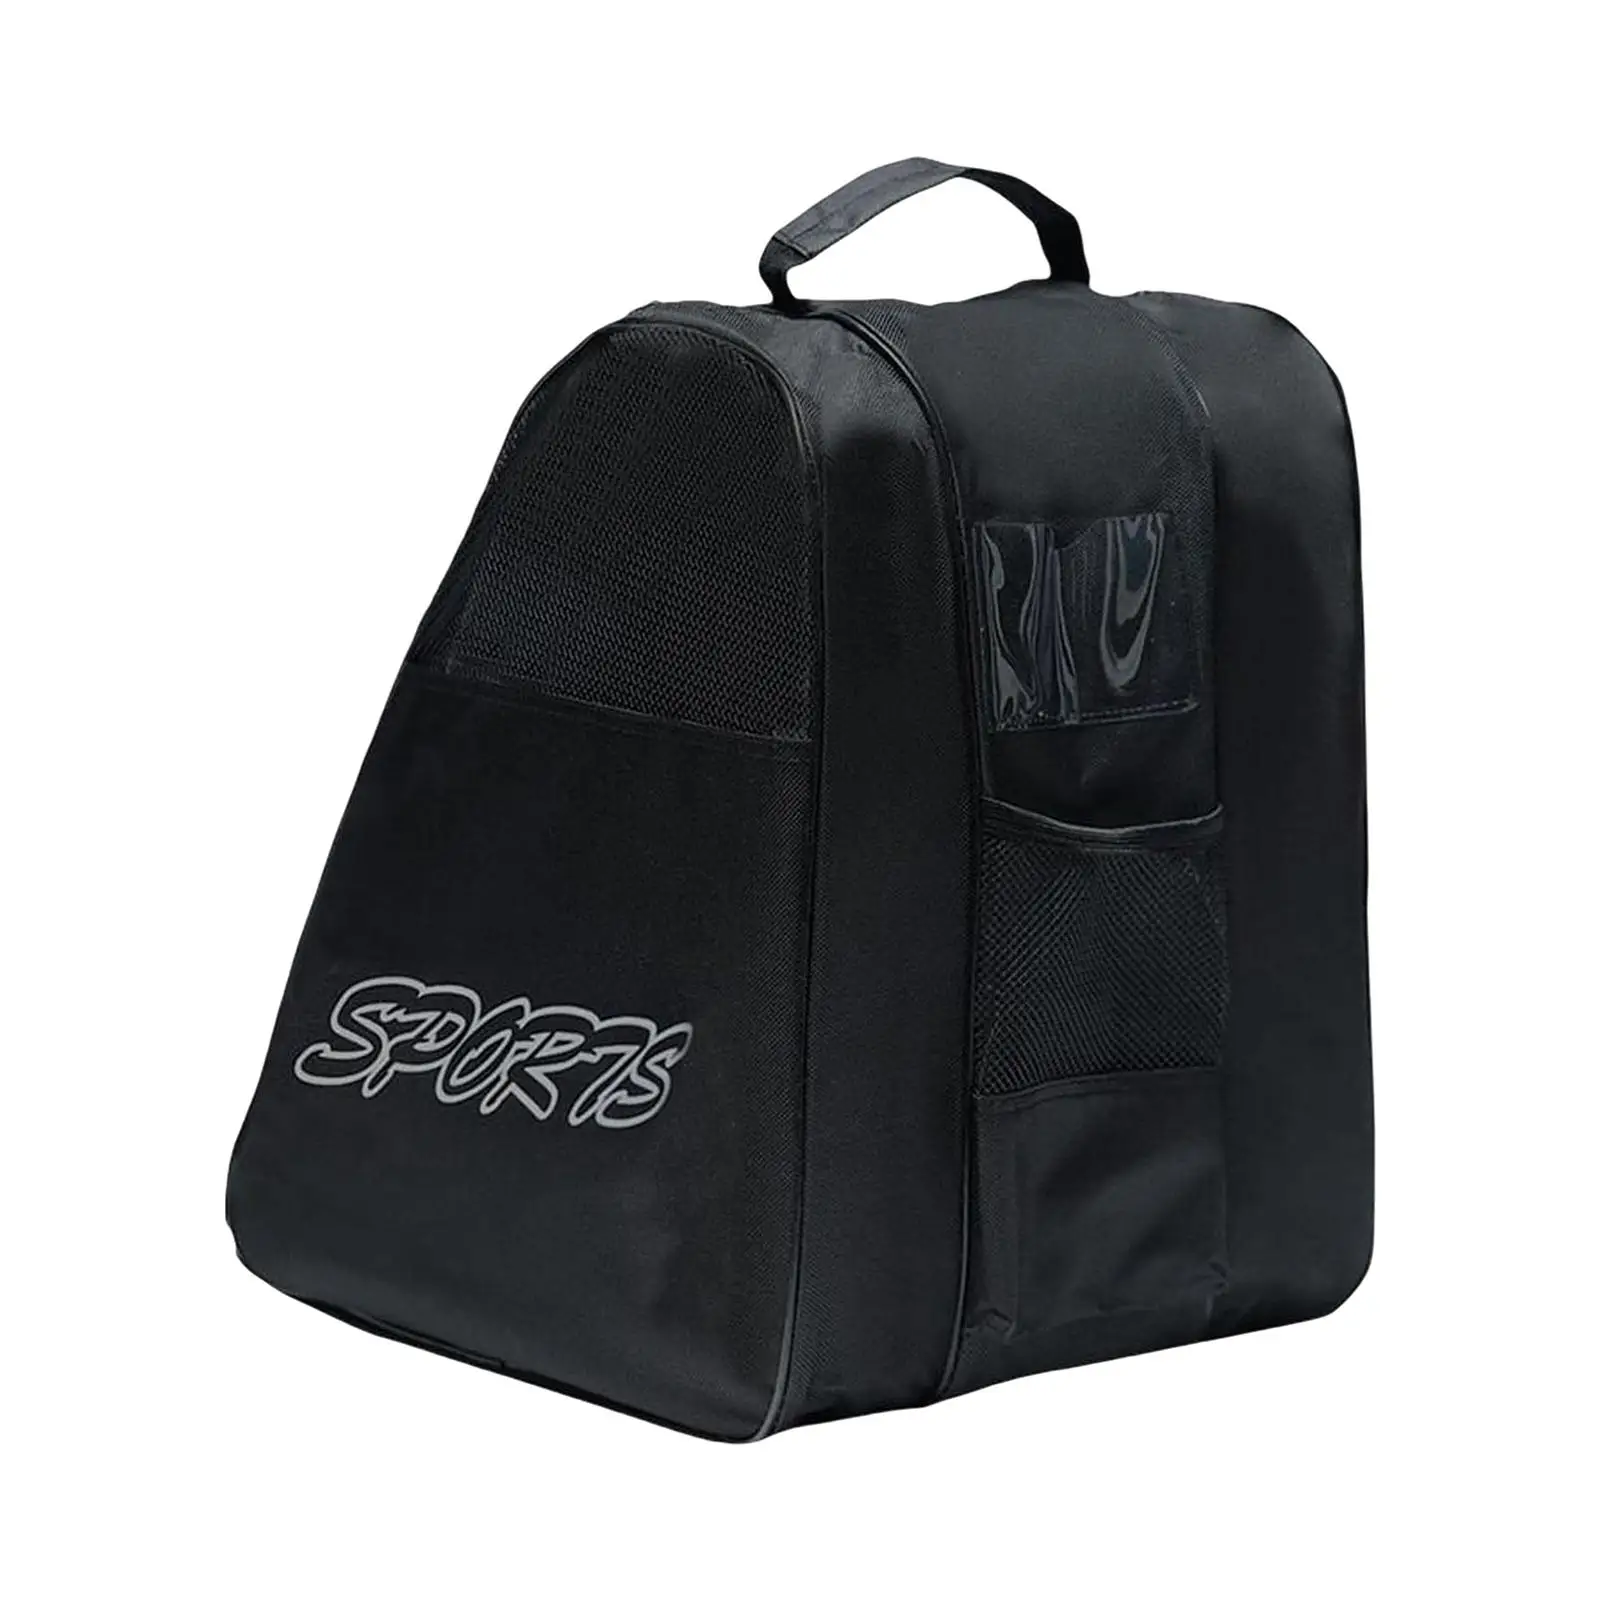 Roller Skate Bags Adjustable Shoulder Strap Accessories Skating Shoes Storage Bag for Ice Hockey Skate Quad Skates Inline Skates